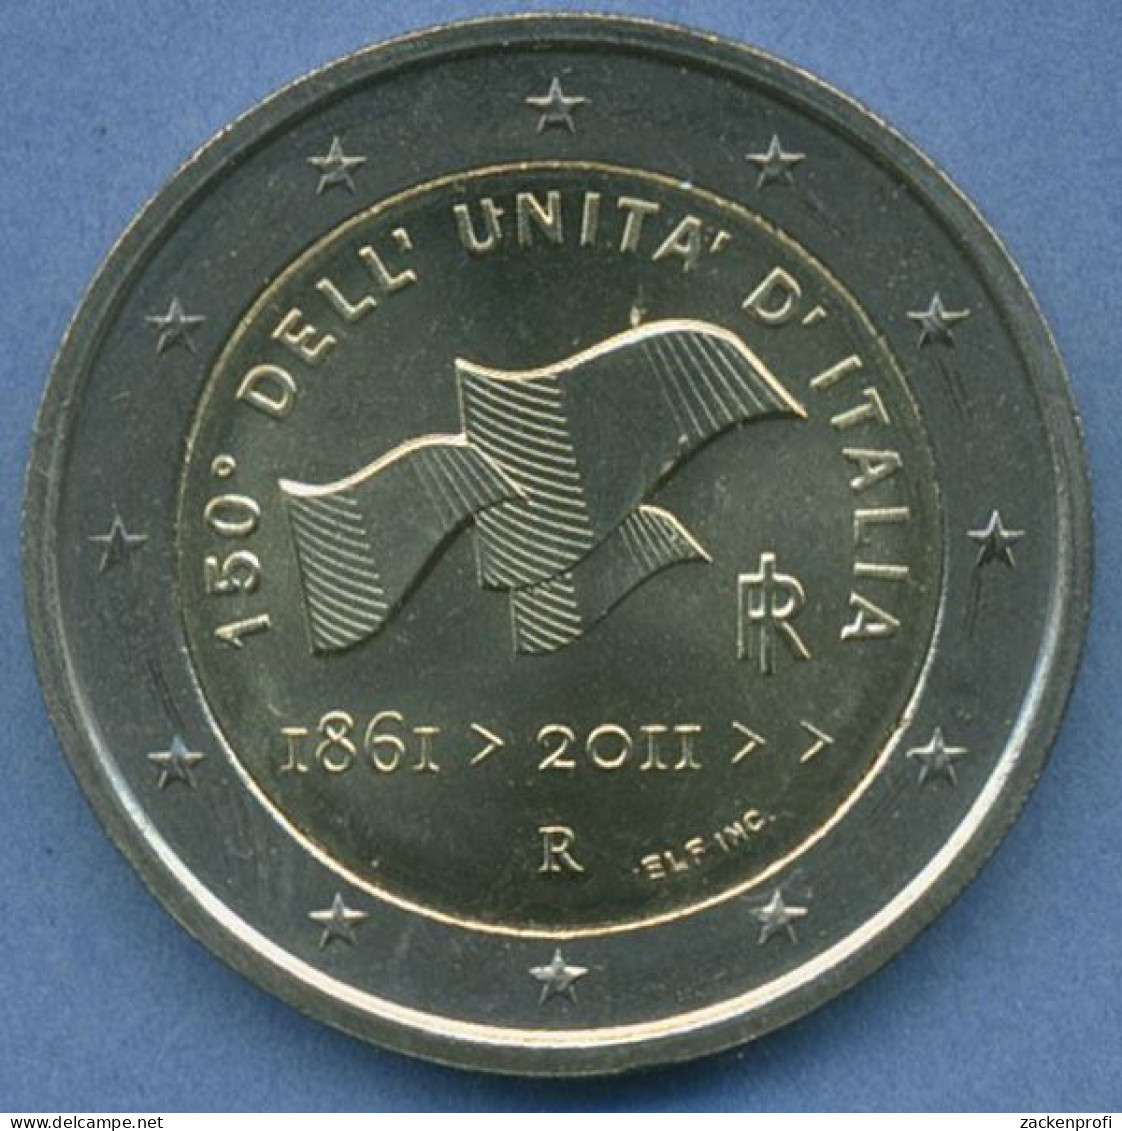 Italien 2 Euro 2011 150 Jahre Vereinigung, Vz/st (m4910) - Italy